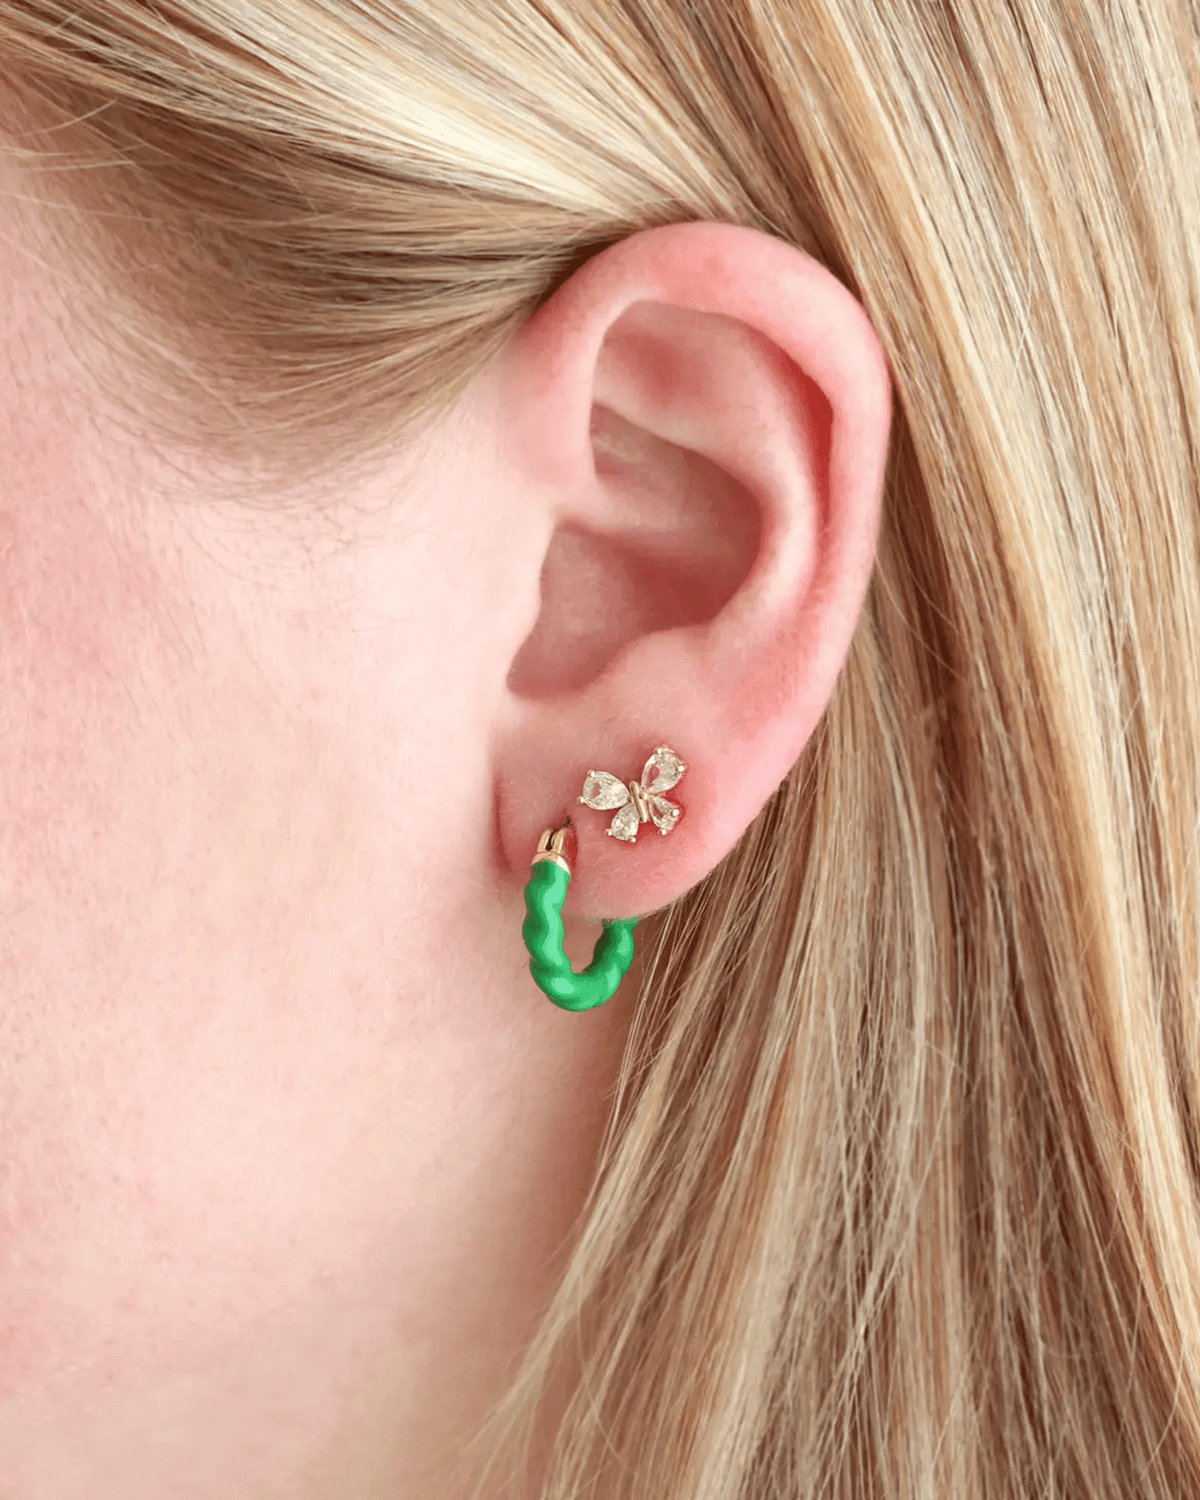 Kris Nations Jewelry Green Twisted Enamel Hoop Earrings in Green